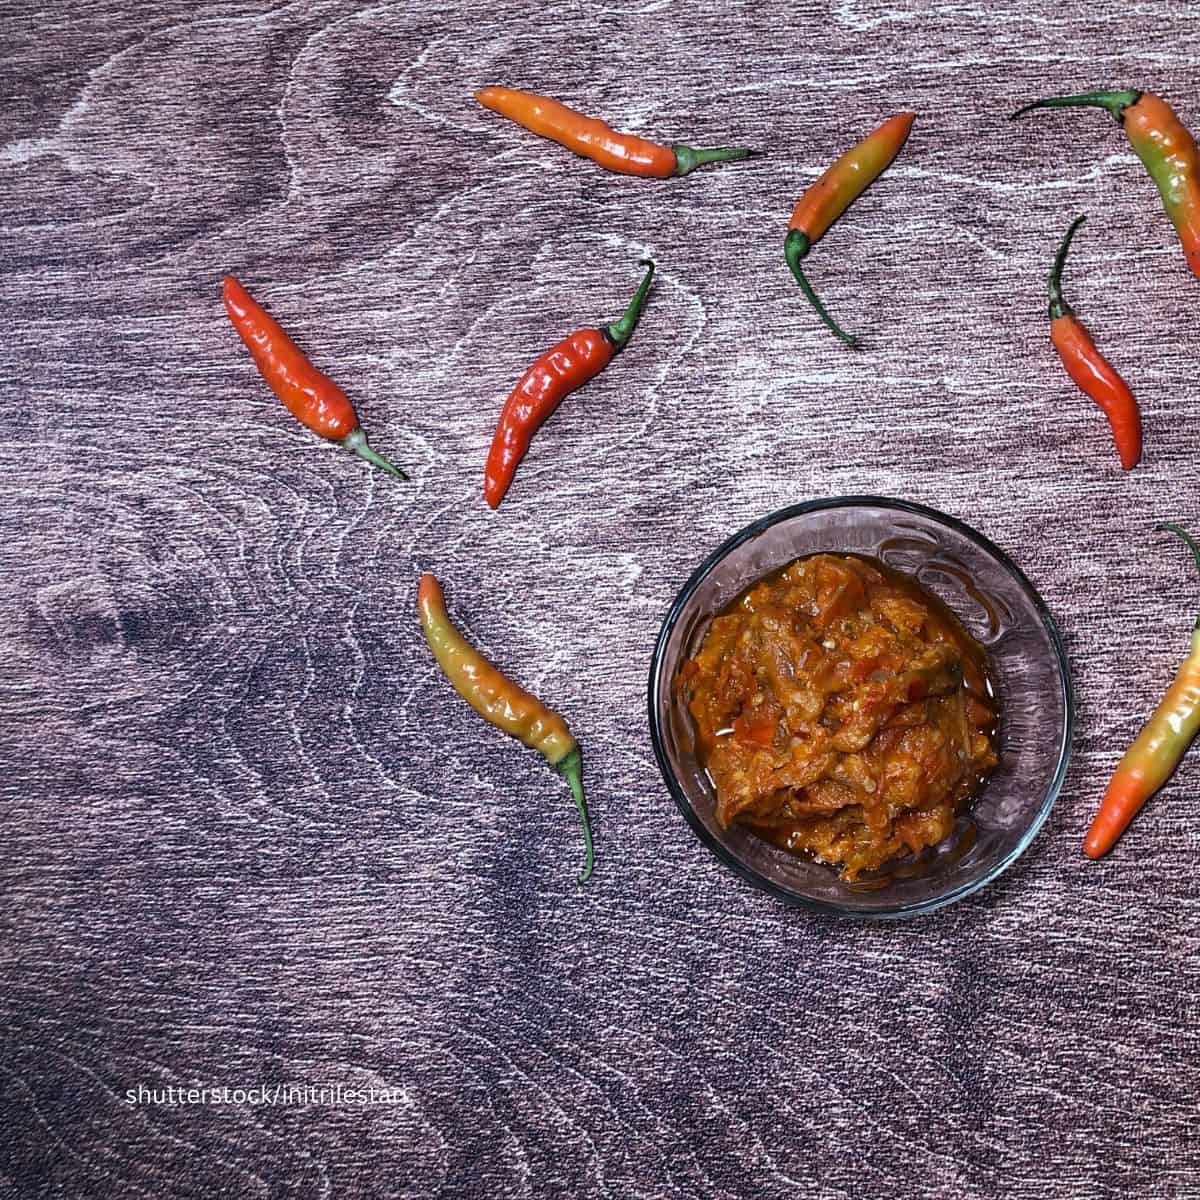 Chili Garlic Sauce in Clear Bowl